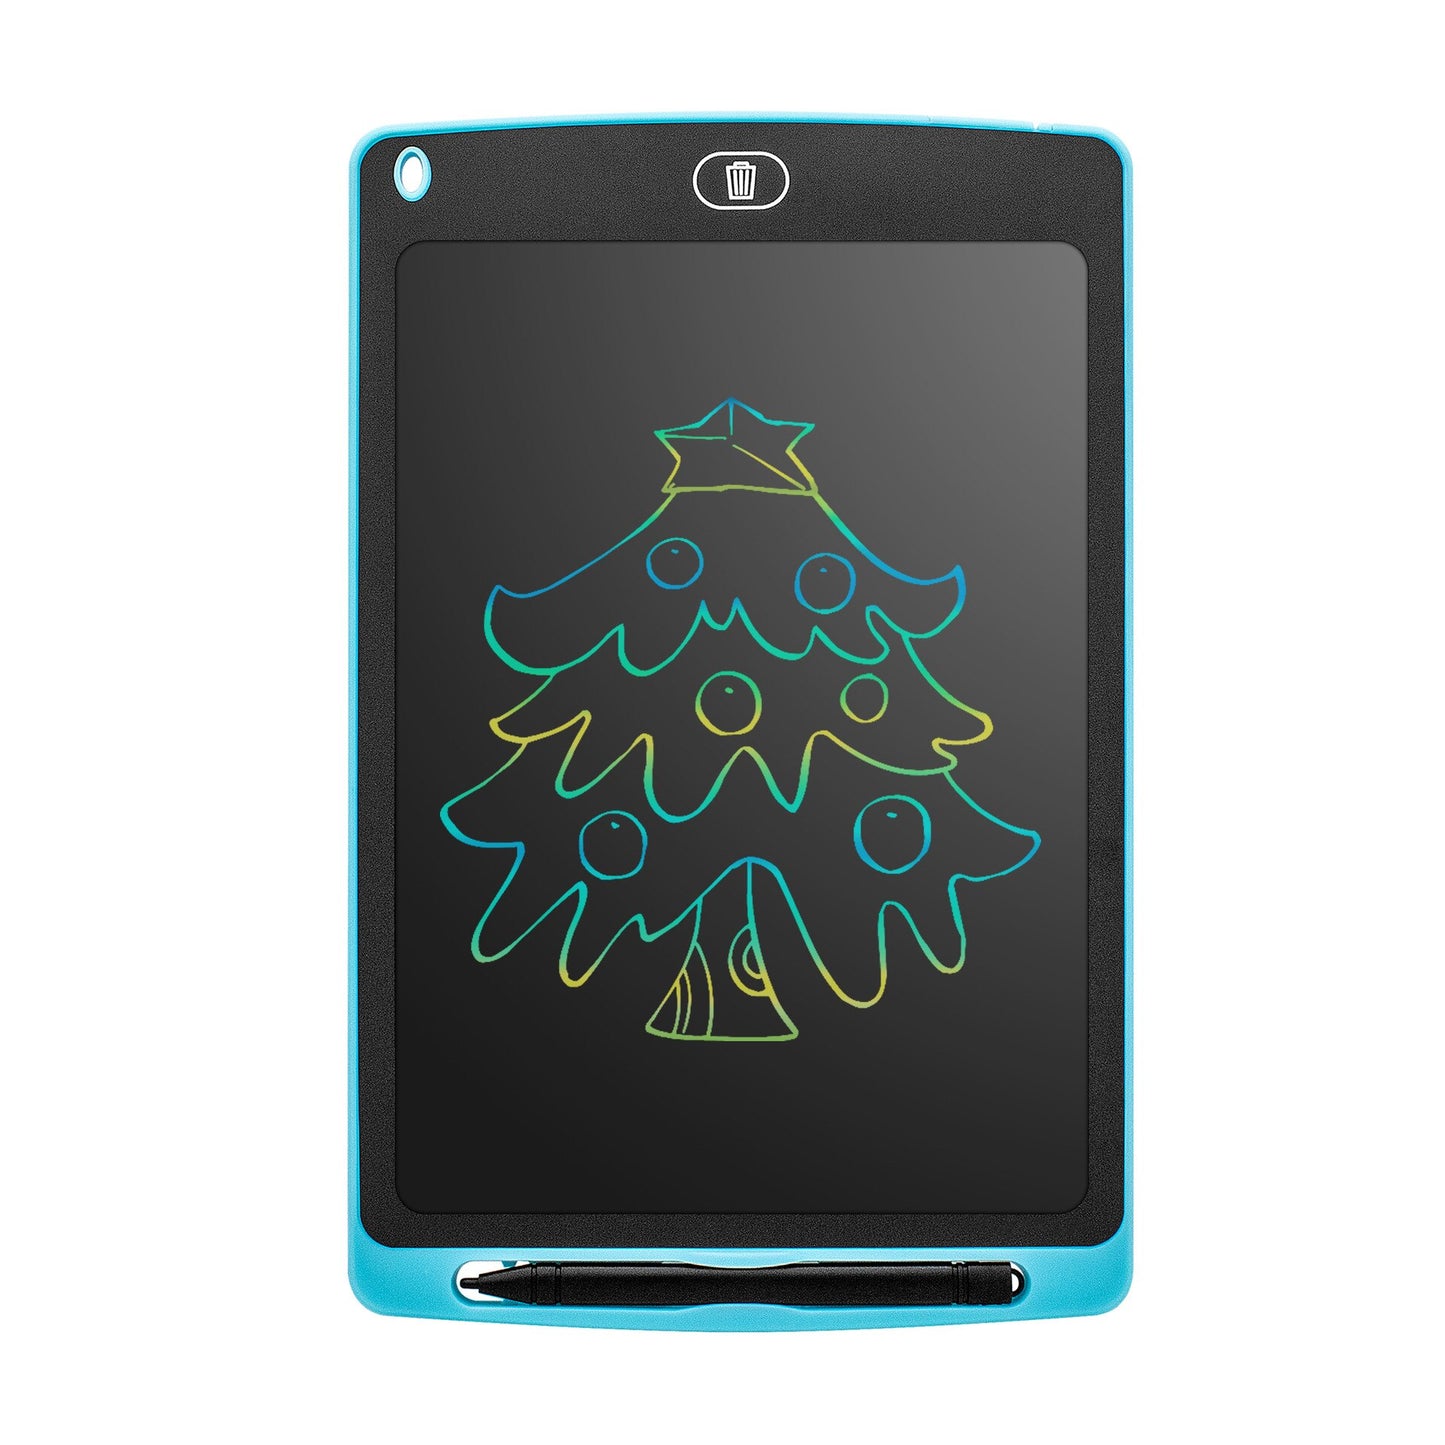 Tablette intelligente anti-casse enfant + stylet - X10 Maroc - Livraison gratuite - Bleu